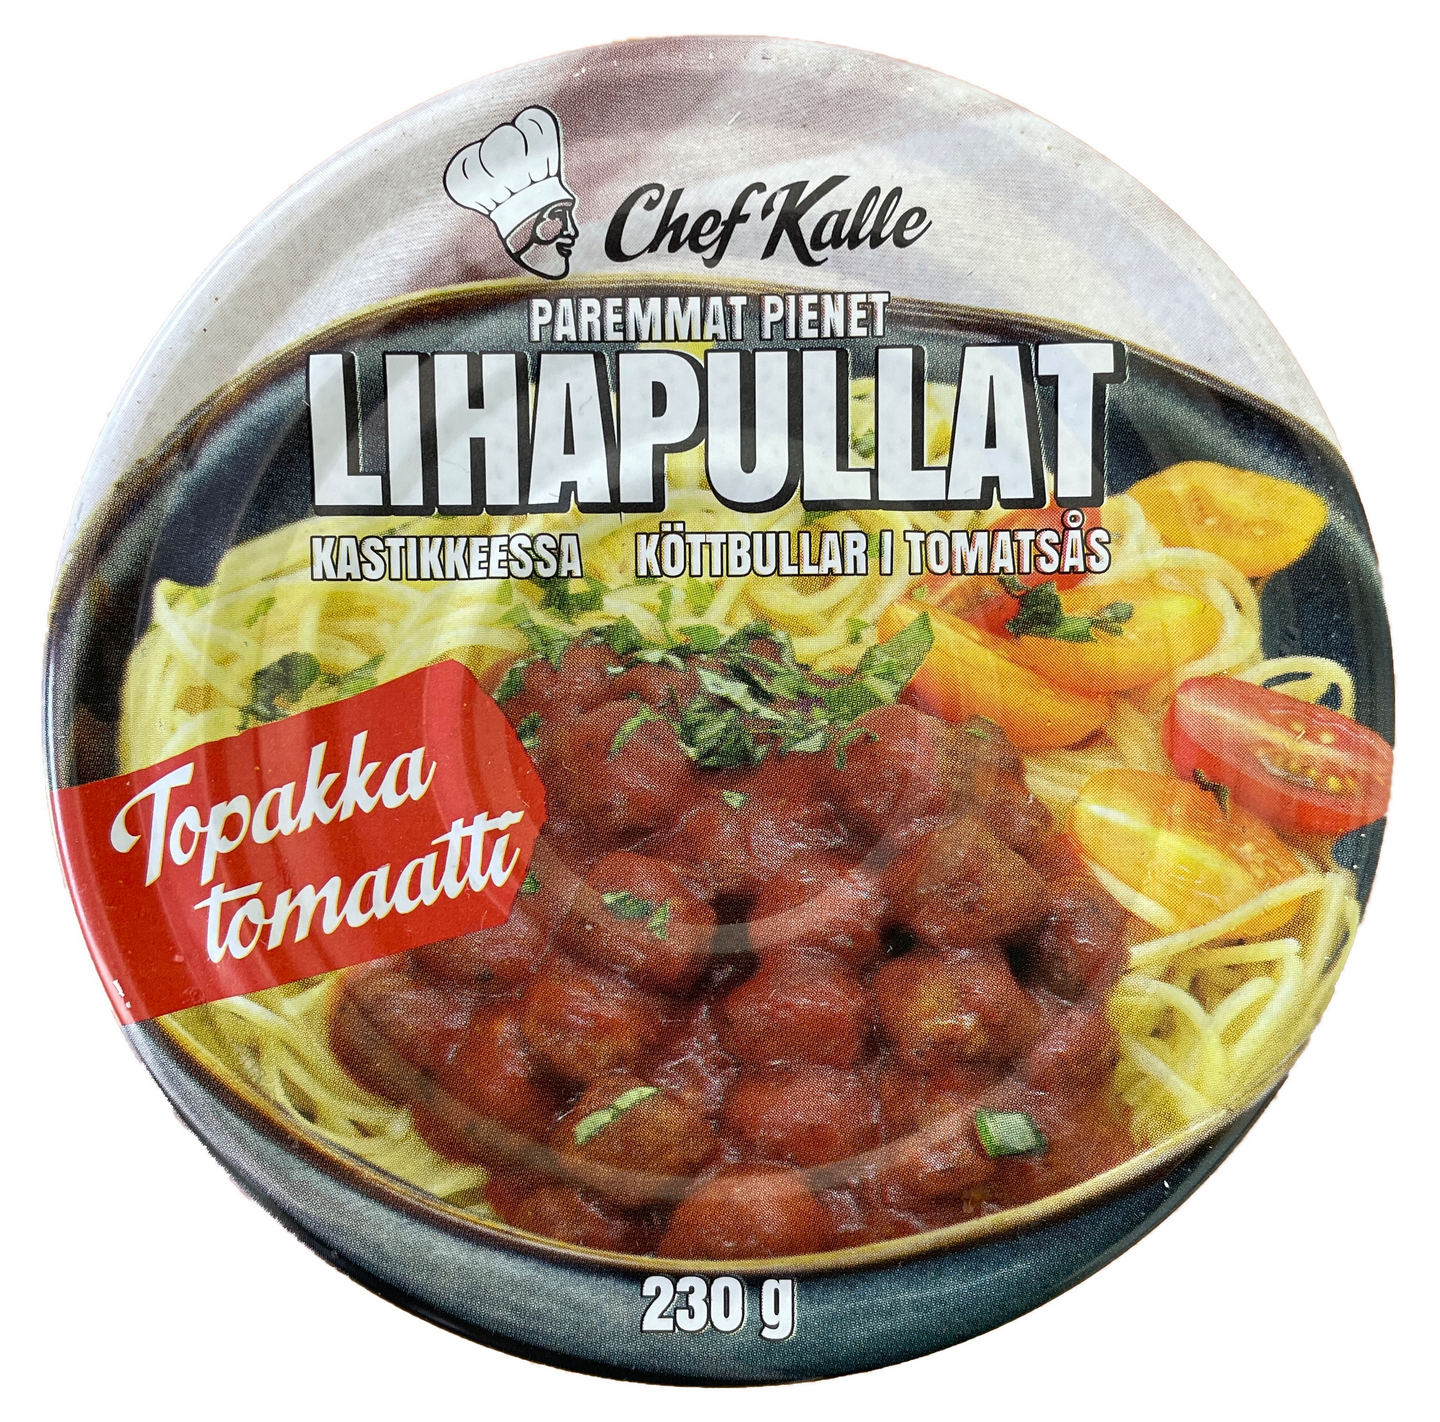 Chef Kalle Paremmat pienet lihapullat kastikkeessa - Topakka tomaatti 230g